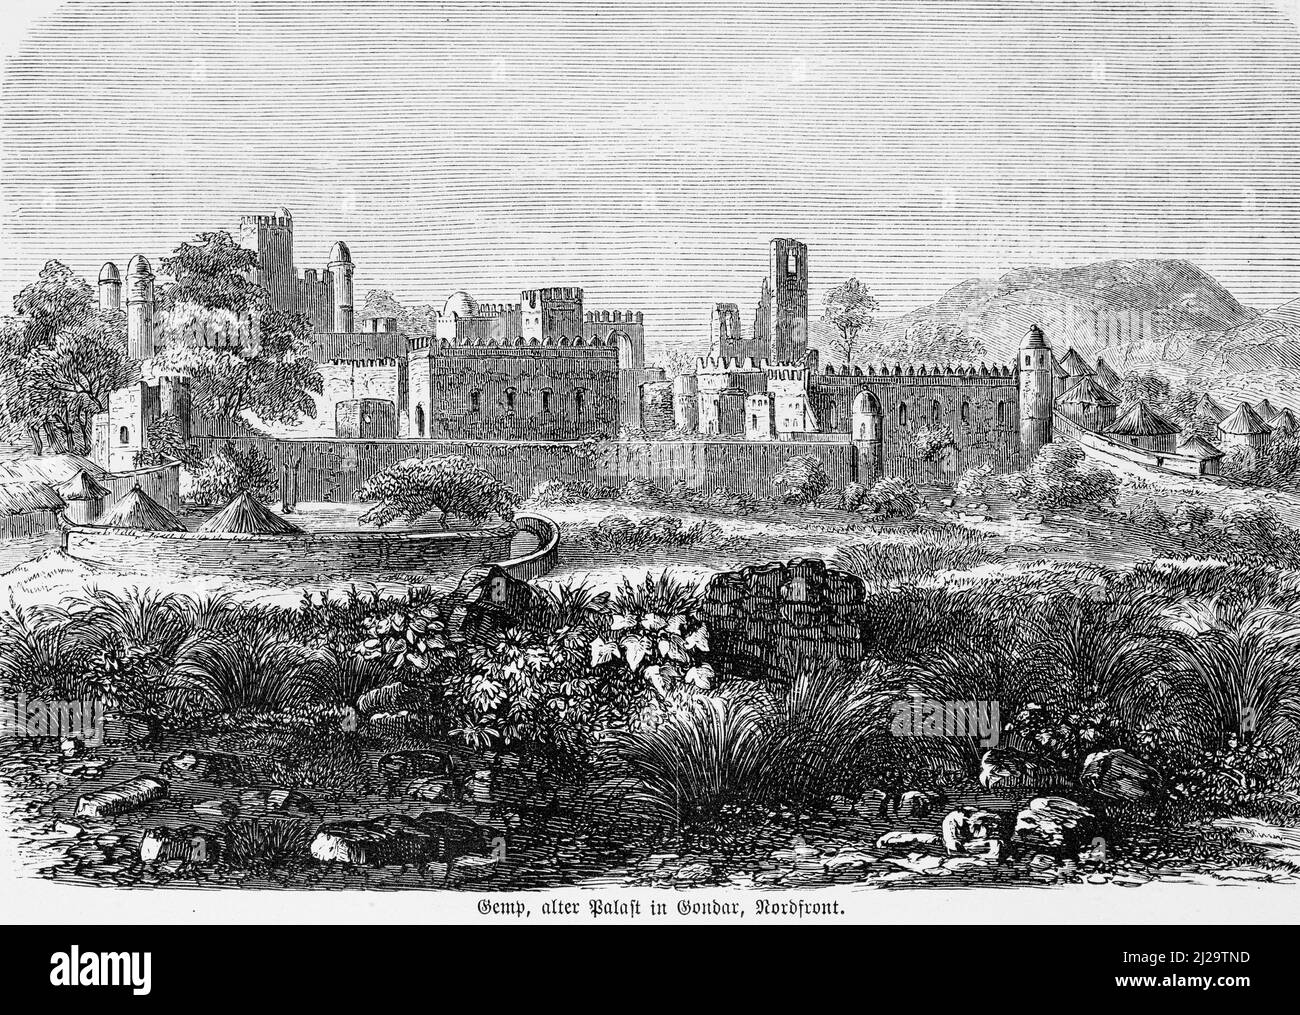 Gondar, Gonder, Palais Gemp, château, tour, Mur, paysage, montagnes, illustration historique 1885, Amhara, Éthiopie Banque D'Images